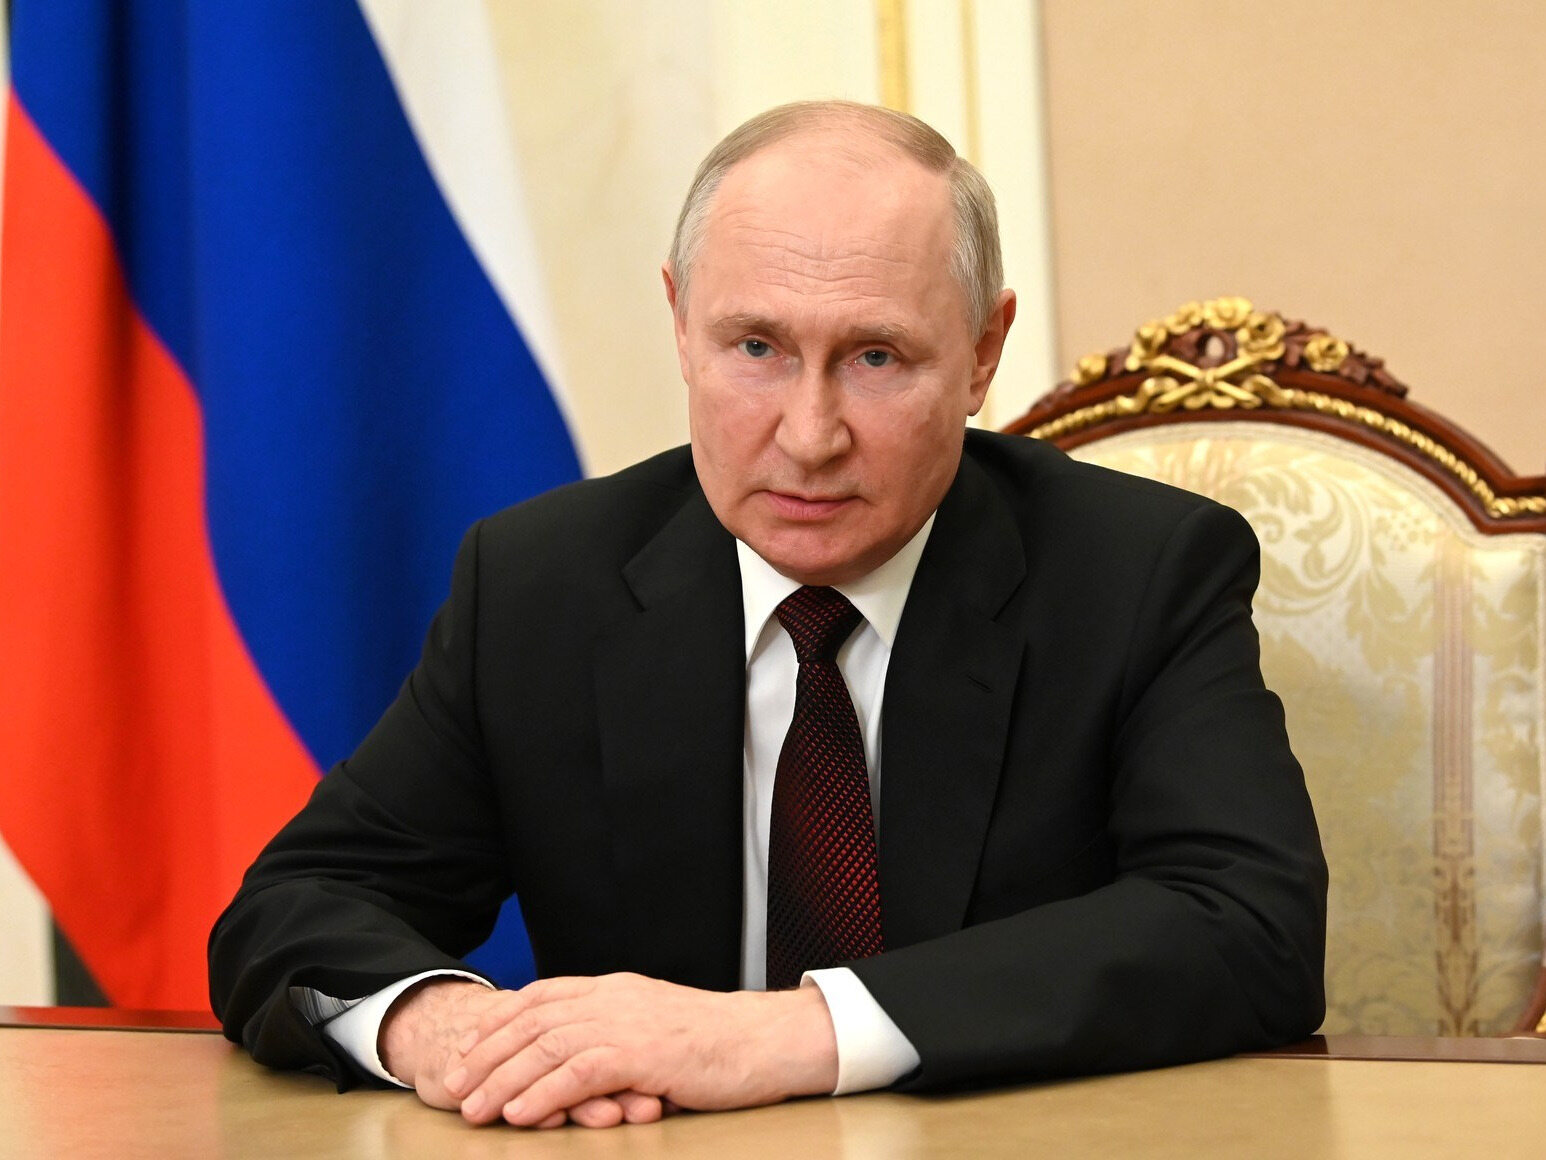 Władimir Putin spotka się z Wołodymyrem Zełenskim? Ujawniono szczegóły planu